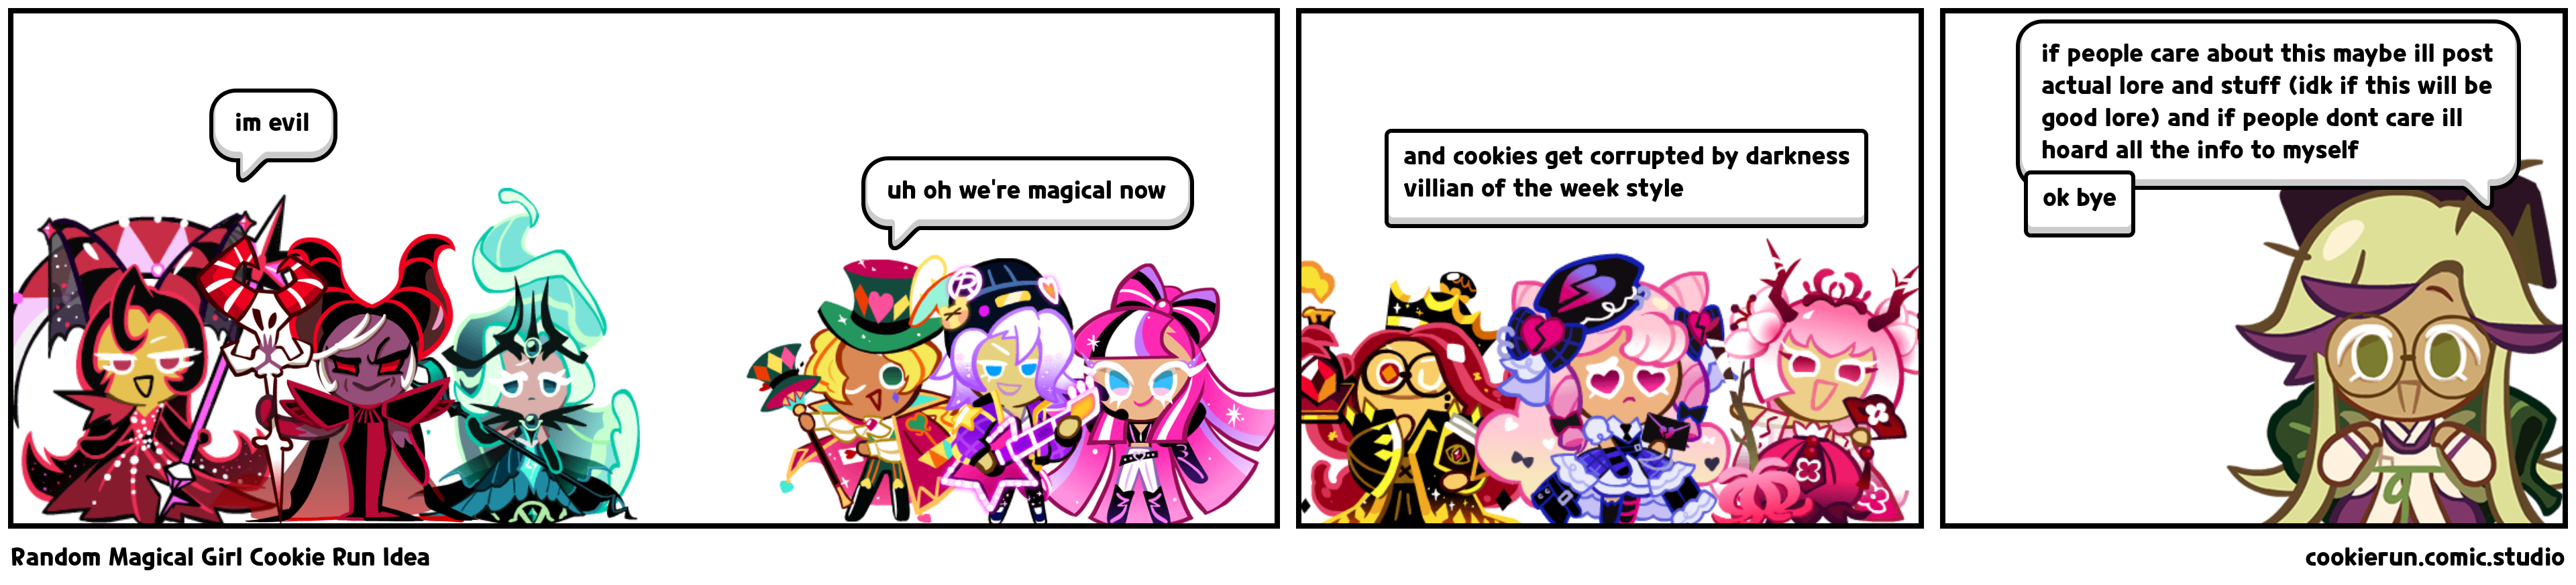 Random Magical Girl Cookie Run Idea